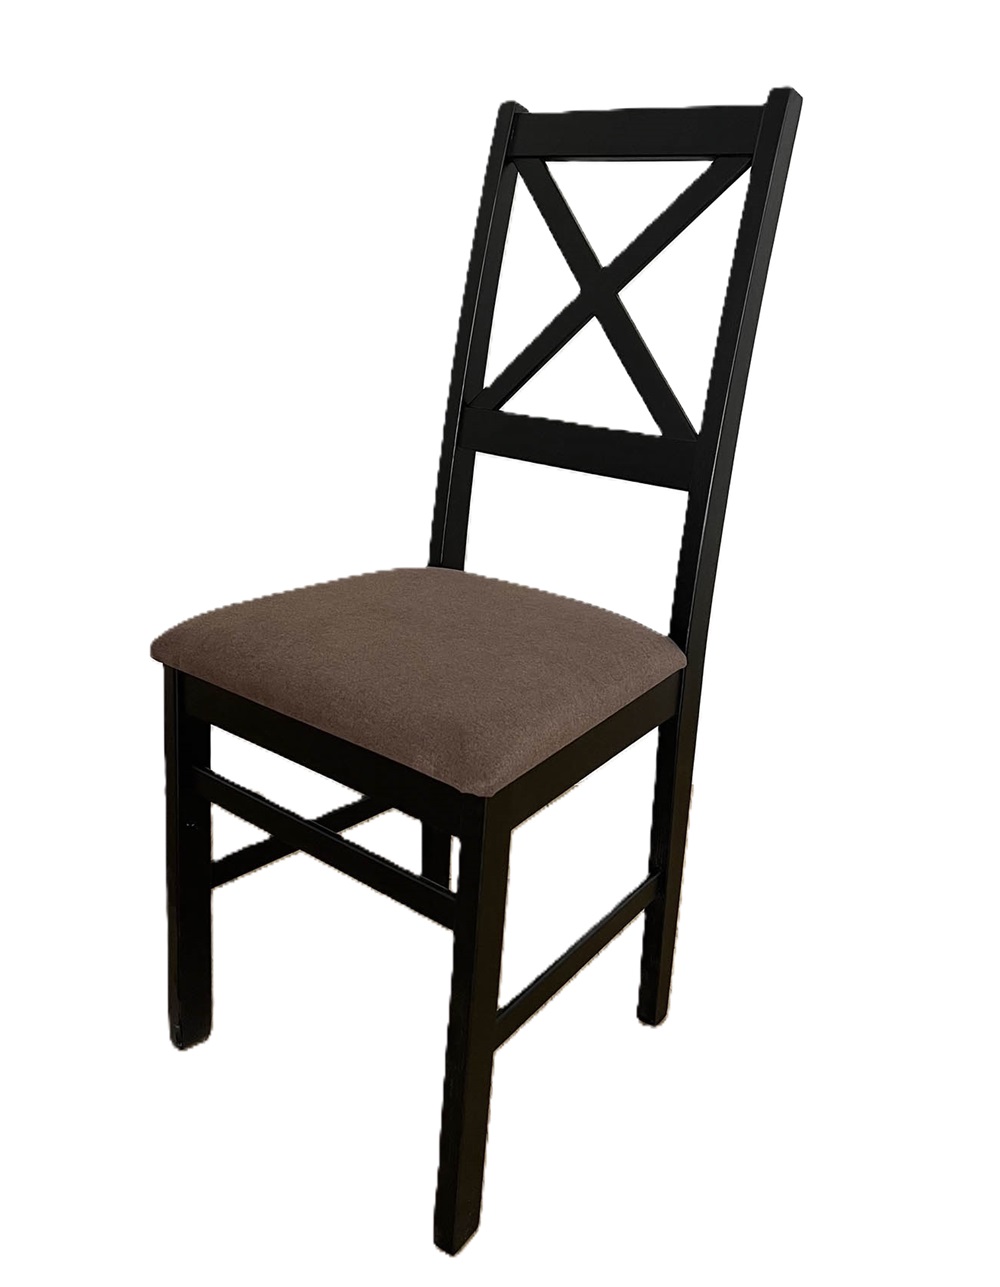 Деревянный стул со спинкой. Обивка из микровелюра. Цвет венге/коричневый.